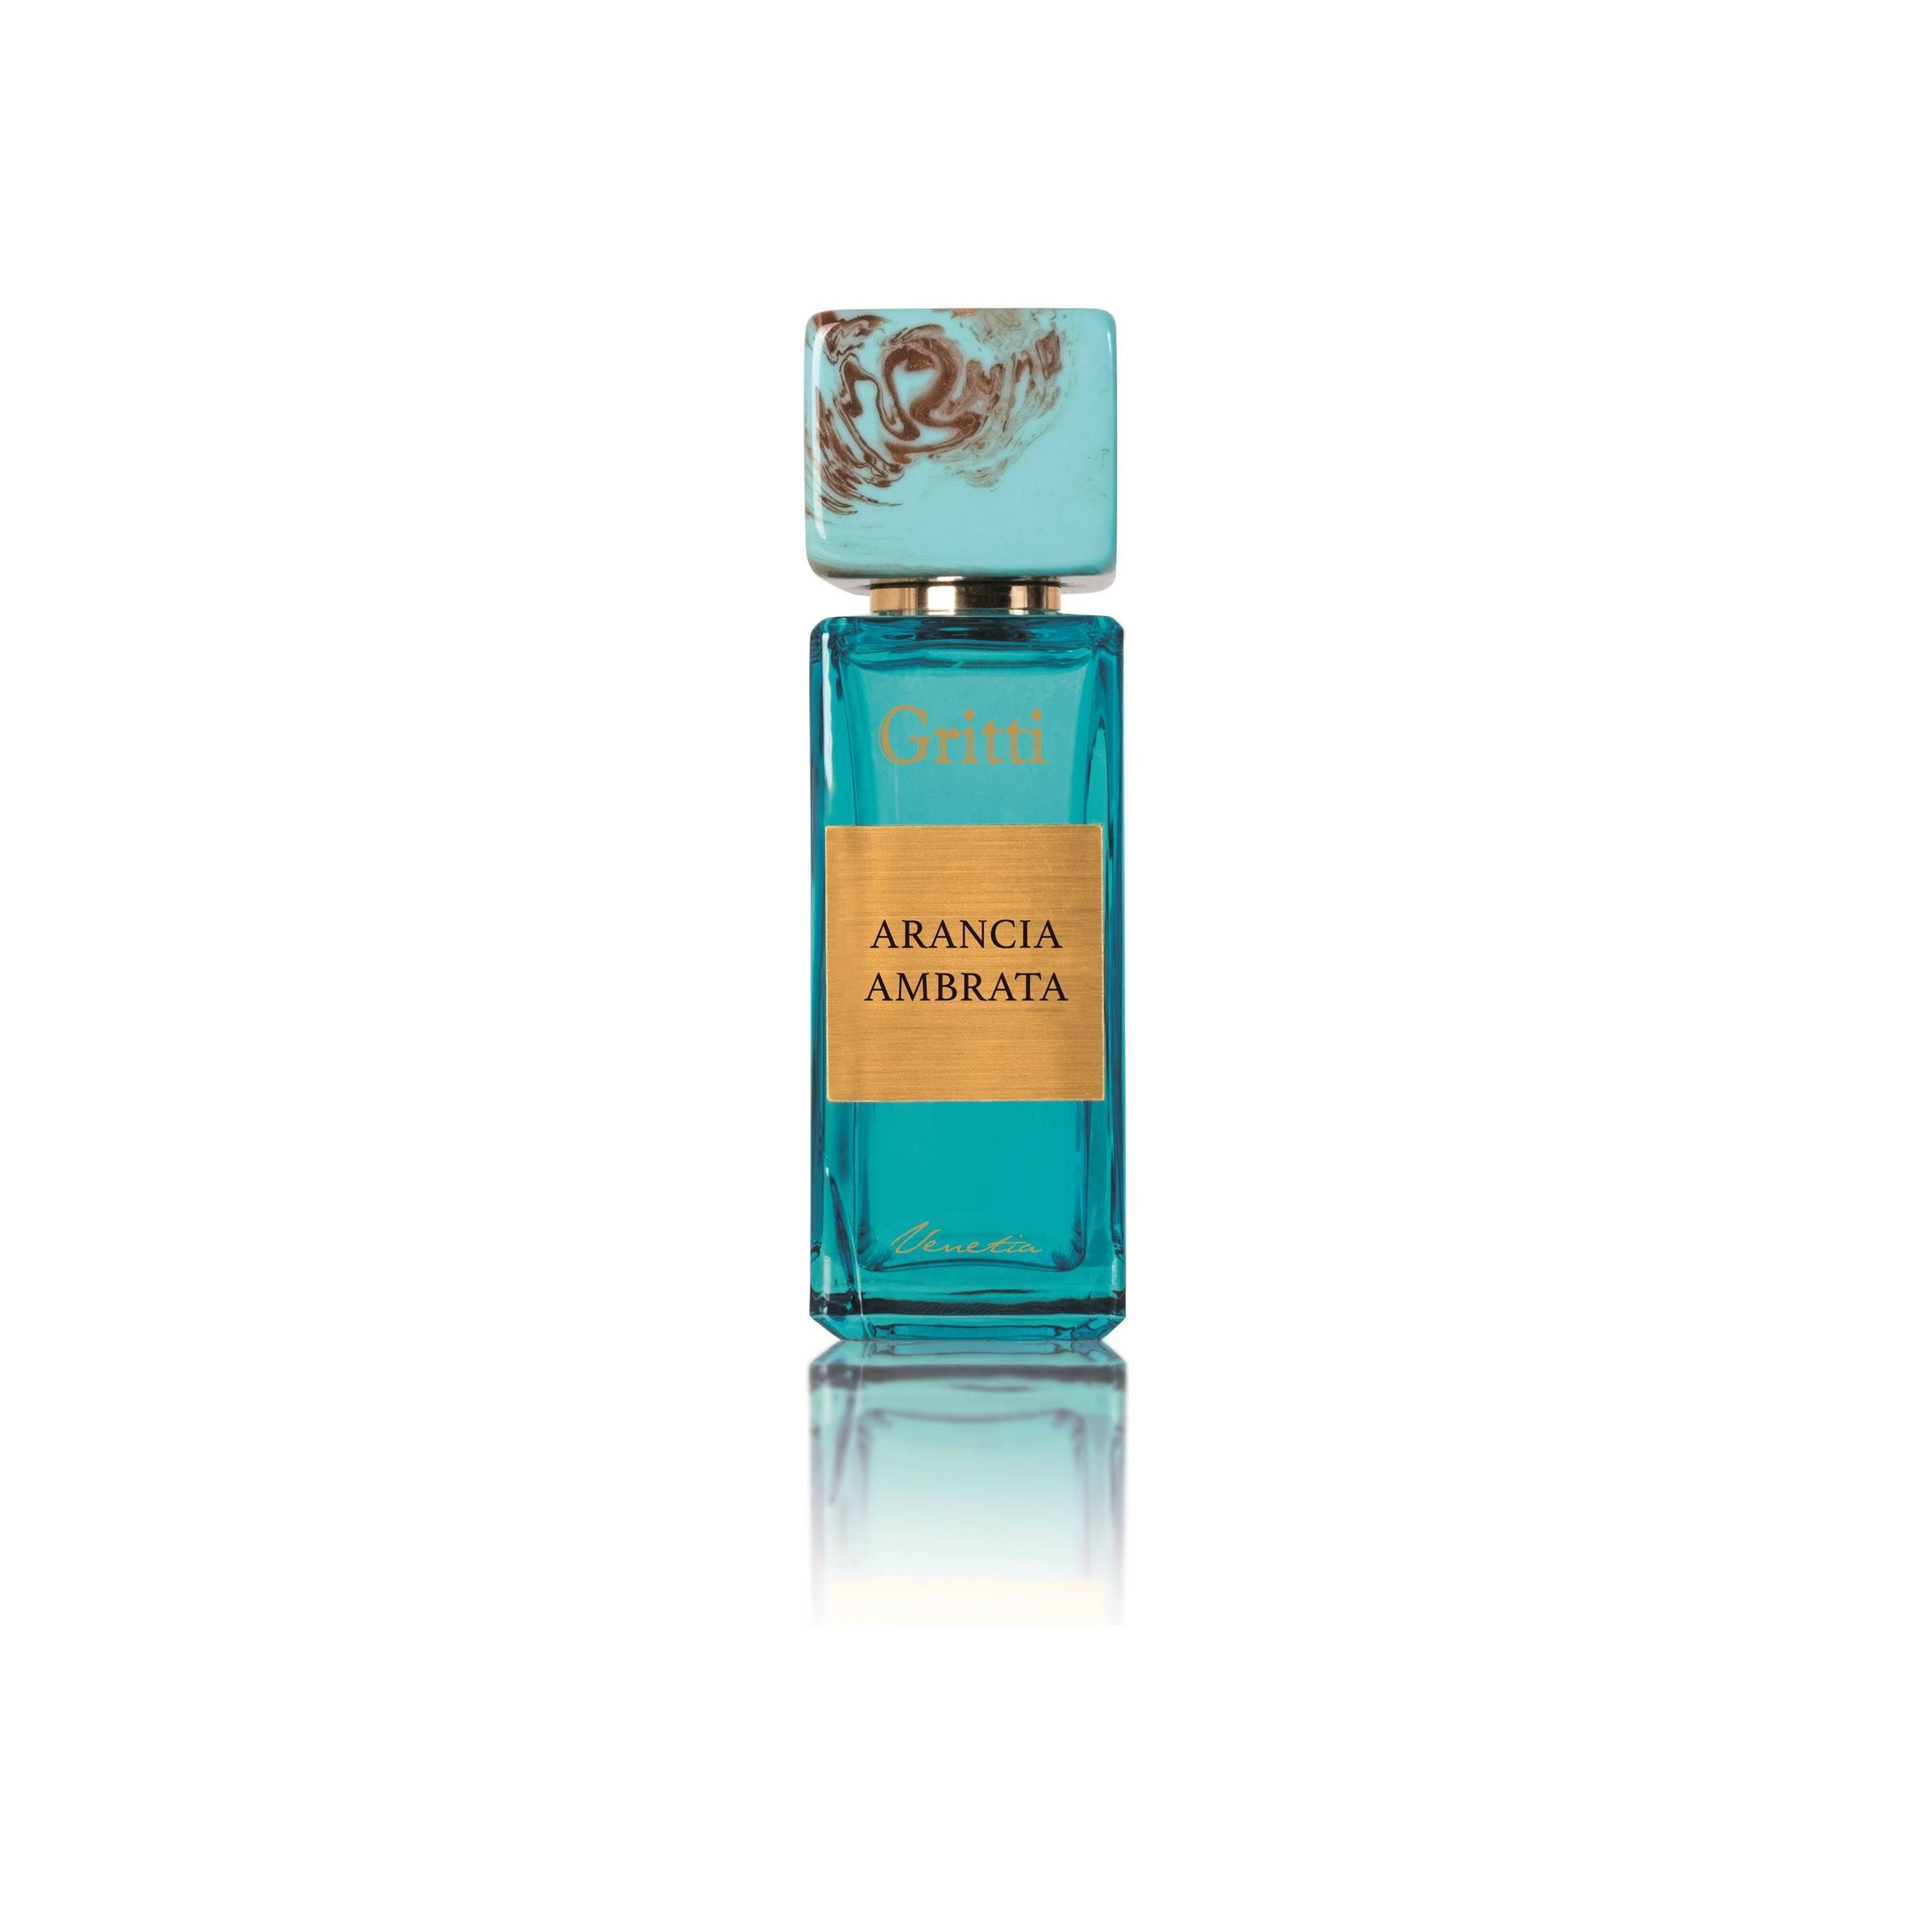 Gritti - Smaragd-Kollektion - Arancia Ambrata - Eau de Parfum